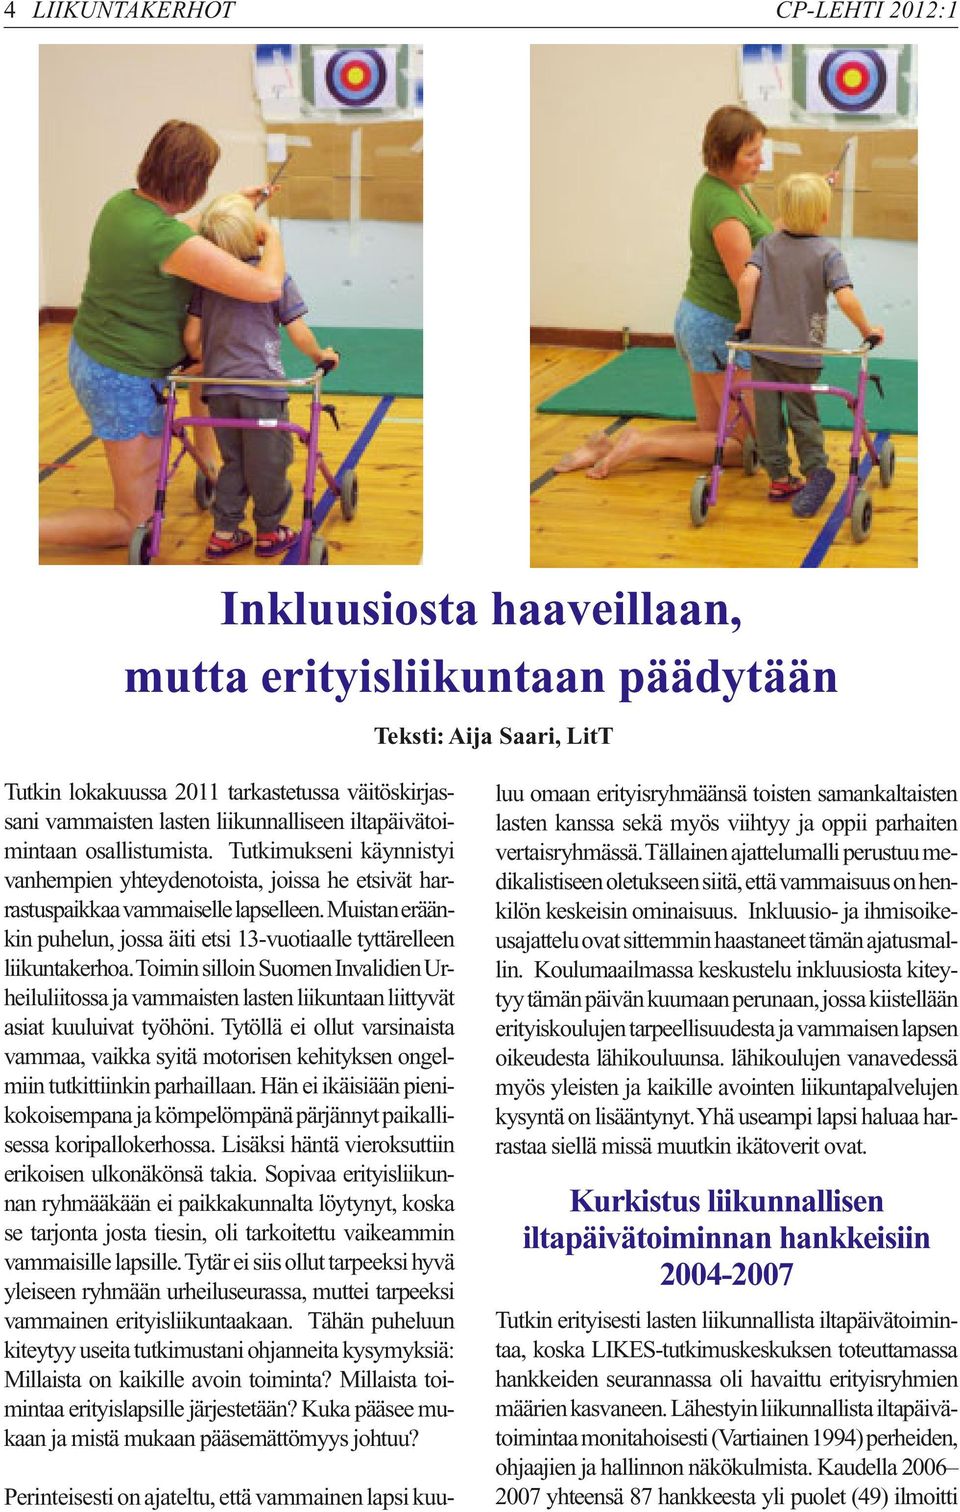 Muistan eräänkin puhelun, jossa äiti etsi 13-vuotiaalle tyttärelleen liikuntakerhoa. Toimin silloin Suomen Invalidien Urheiluliitossa ja vammaisten lasten liikuntaan liittyvät asiat kuuluivat työhöni.